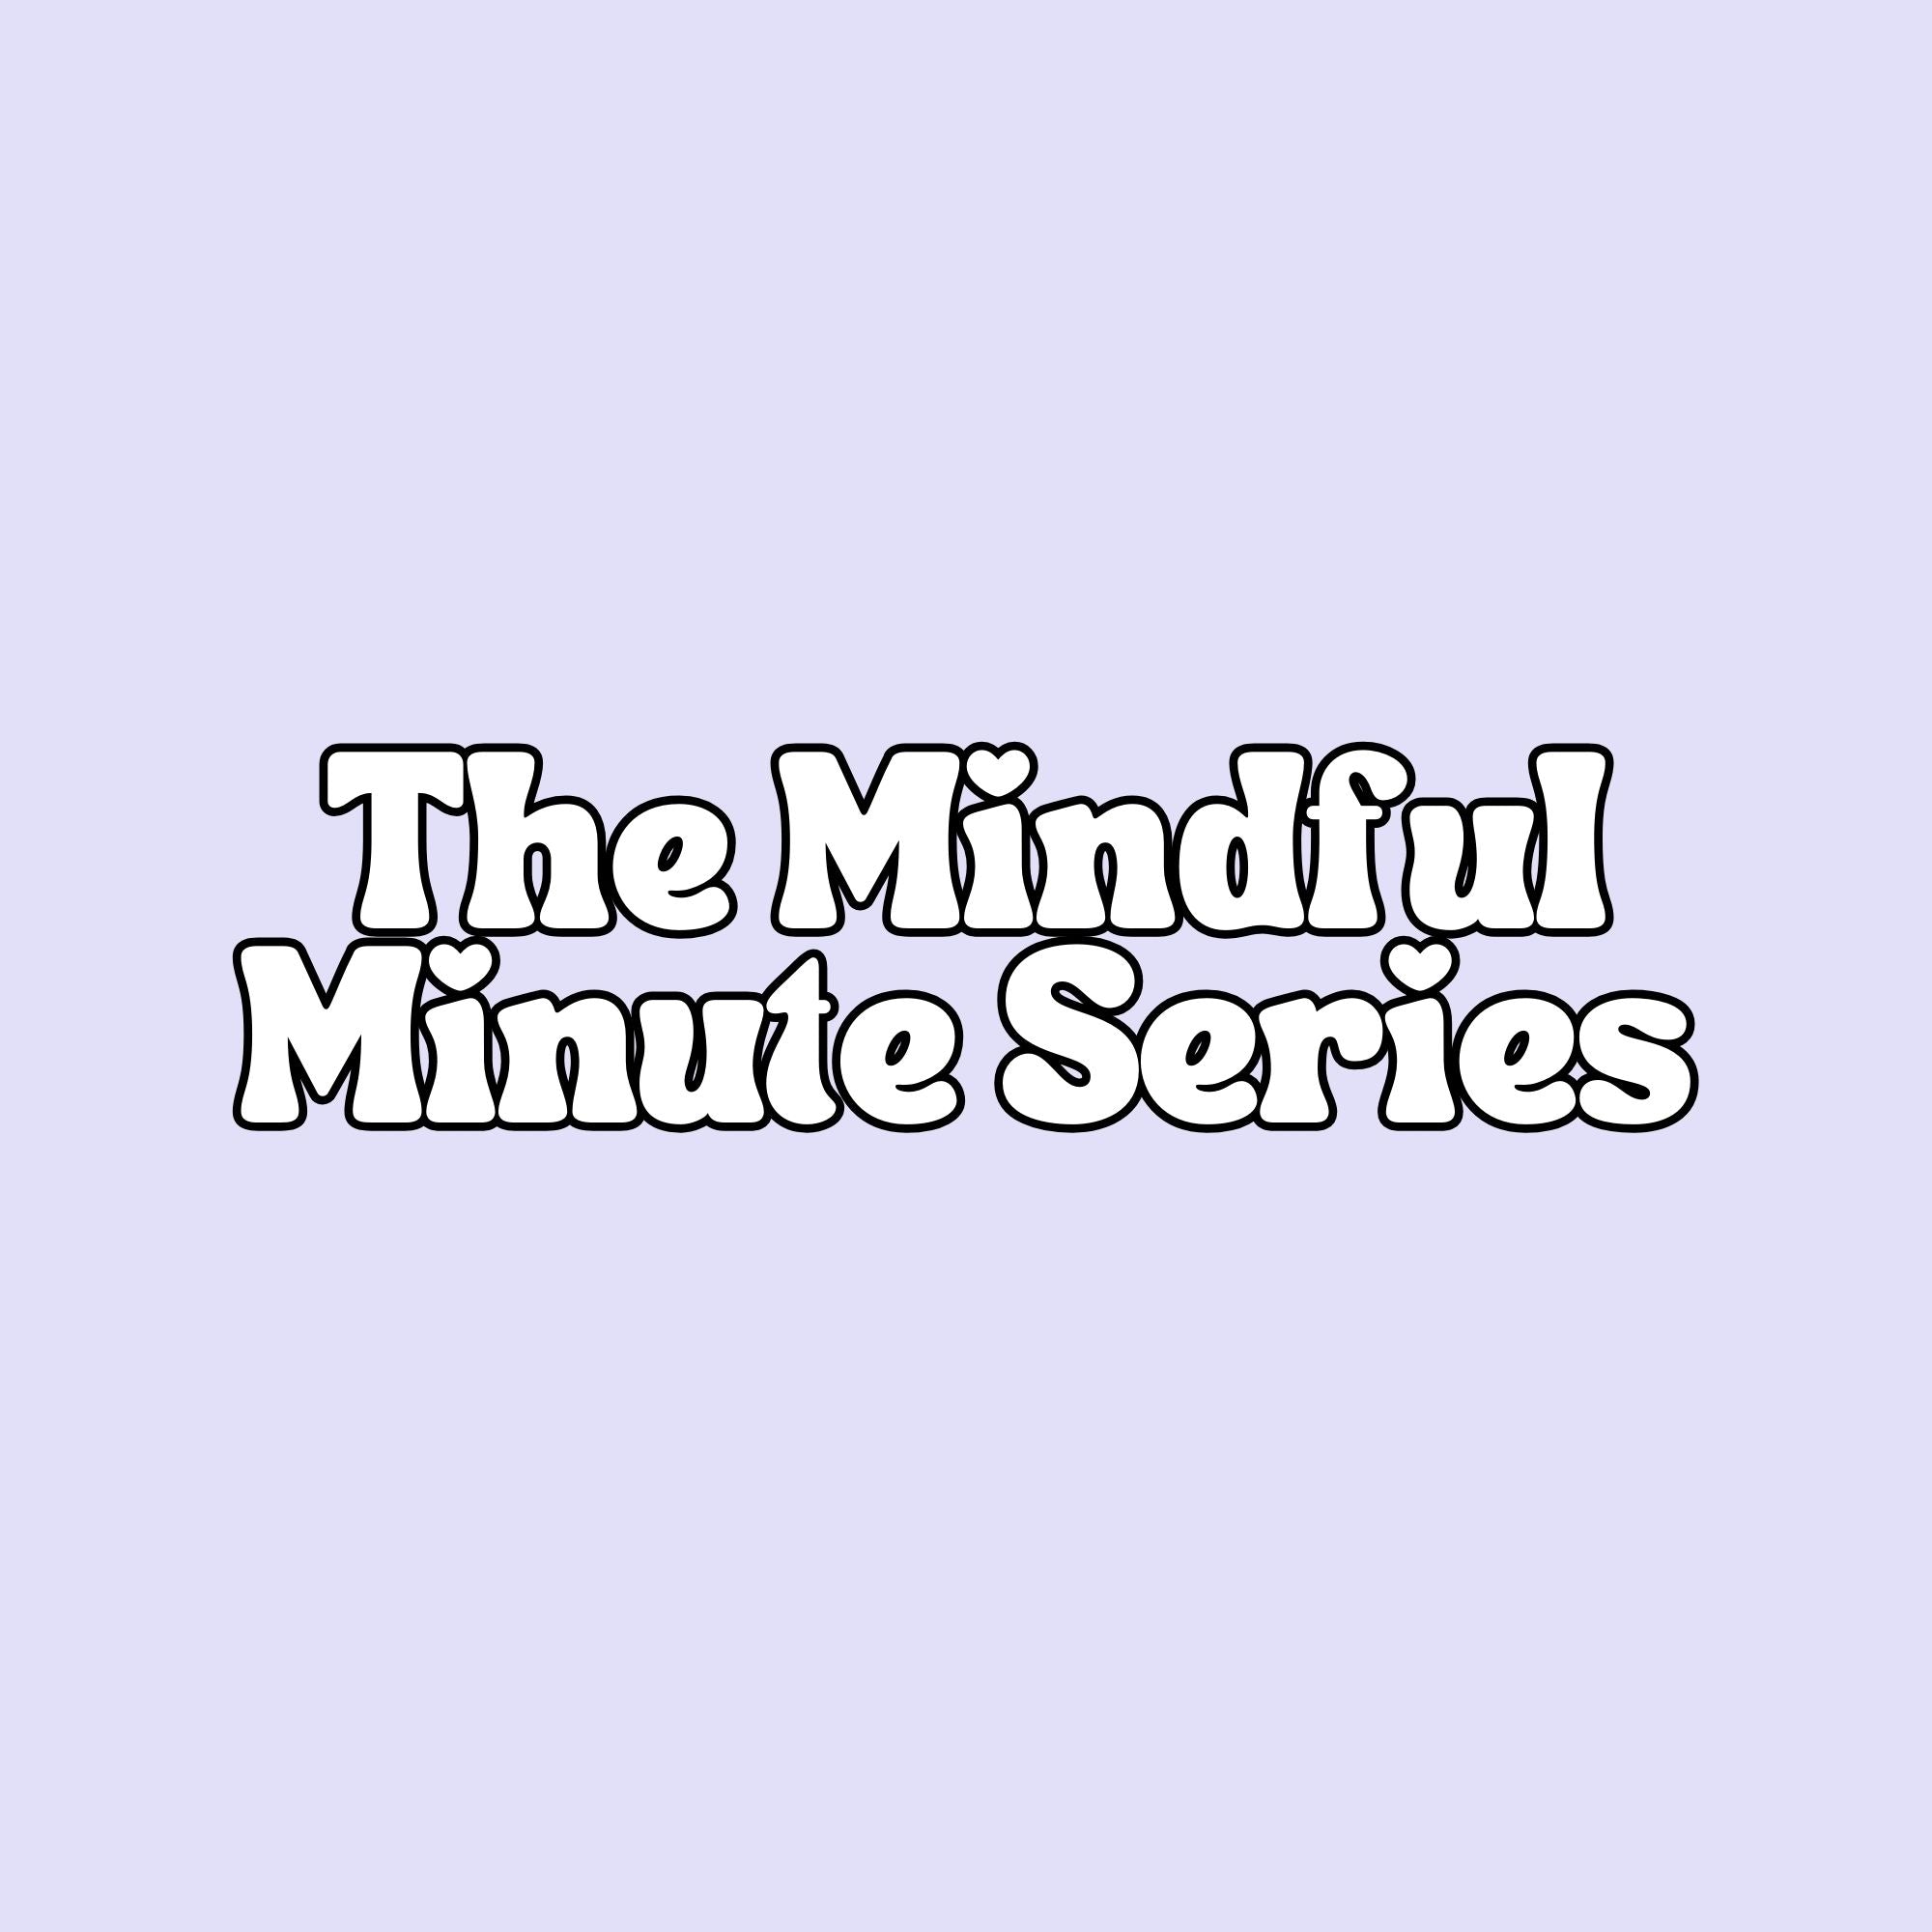 Mindful Minute Activity Bundle (ages 3-11)